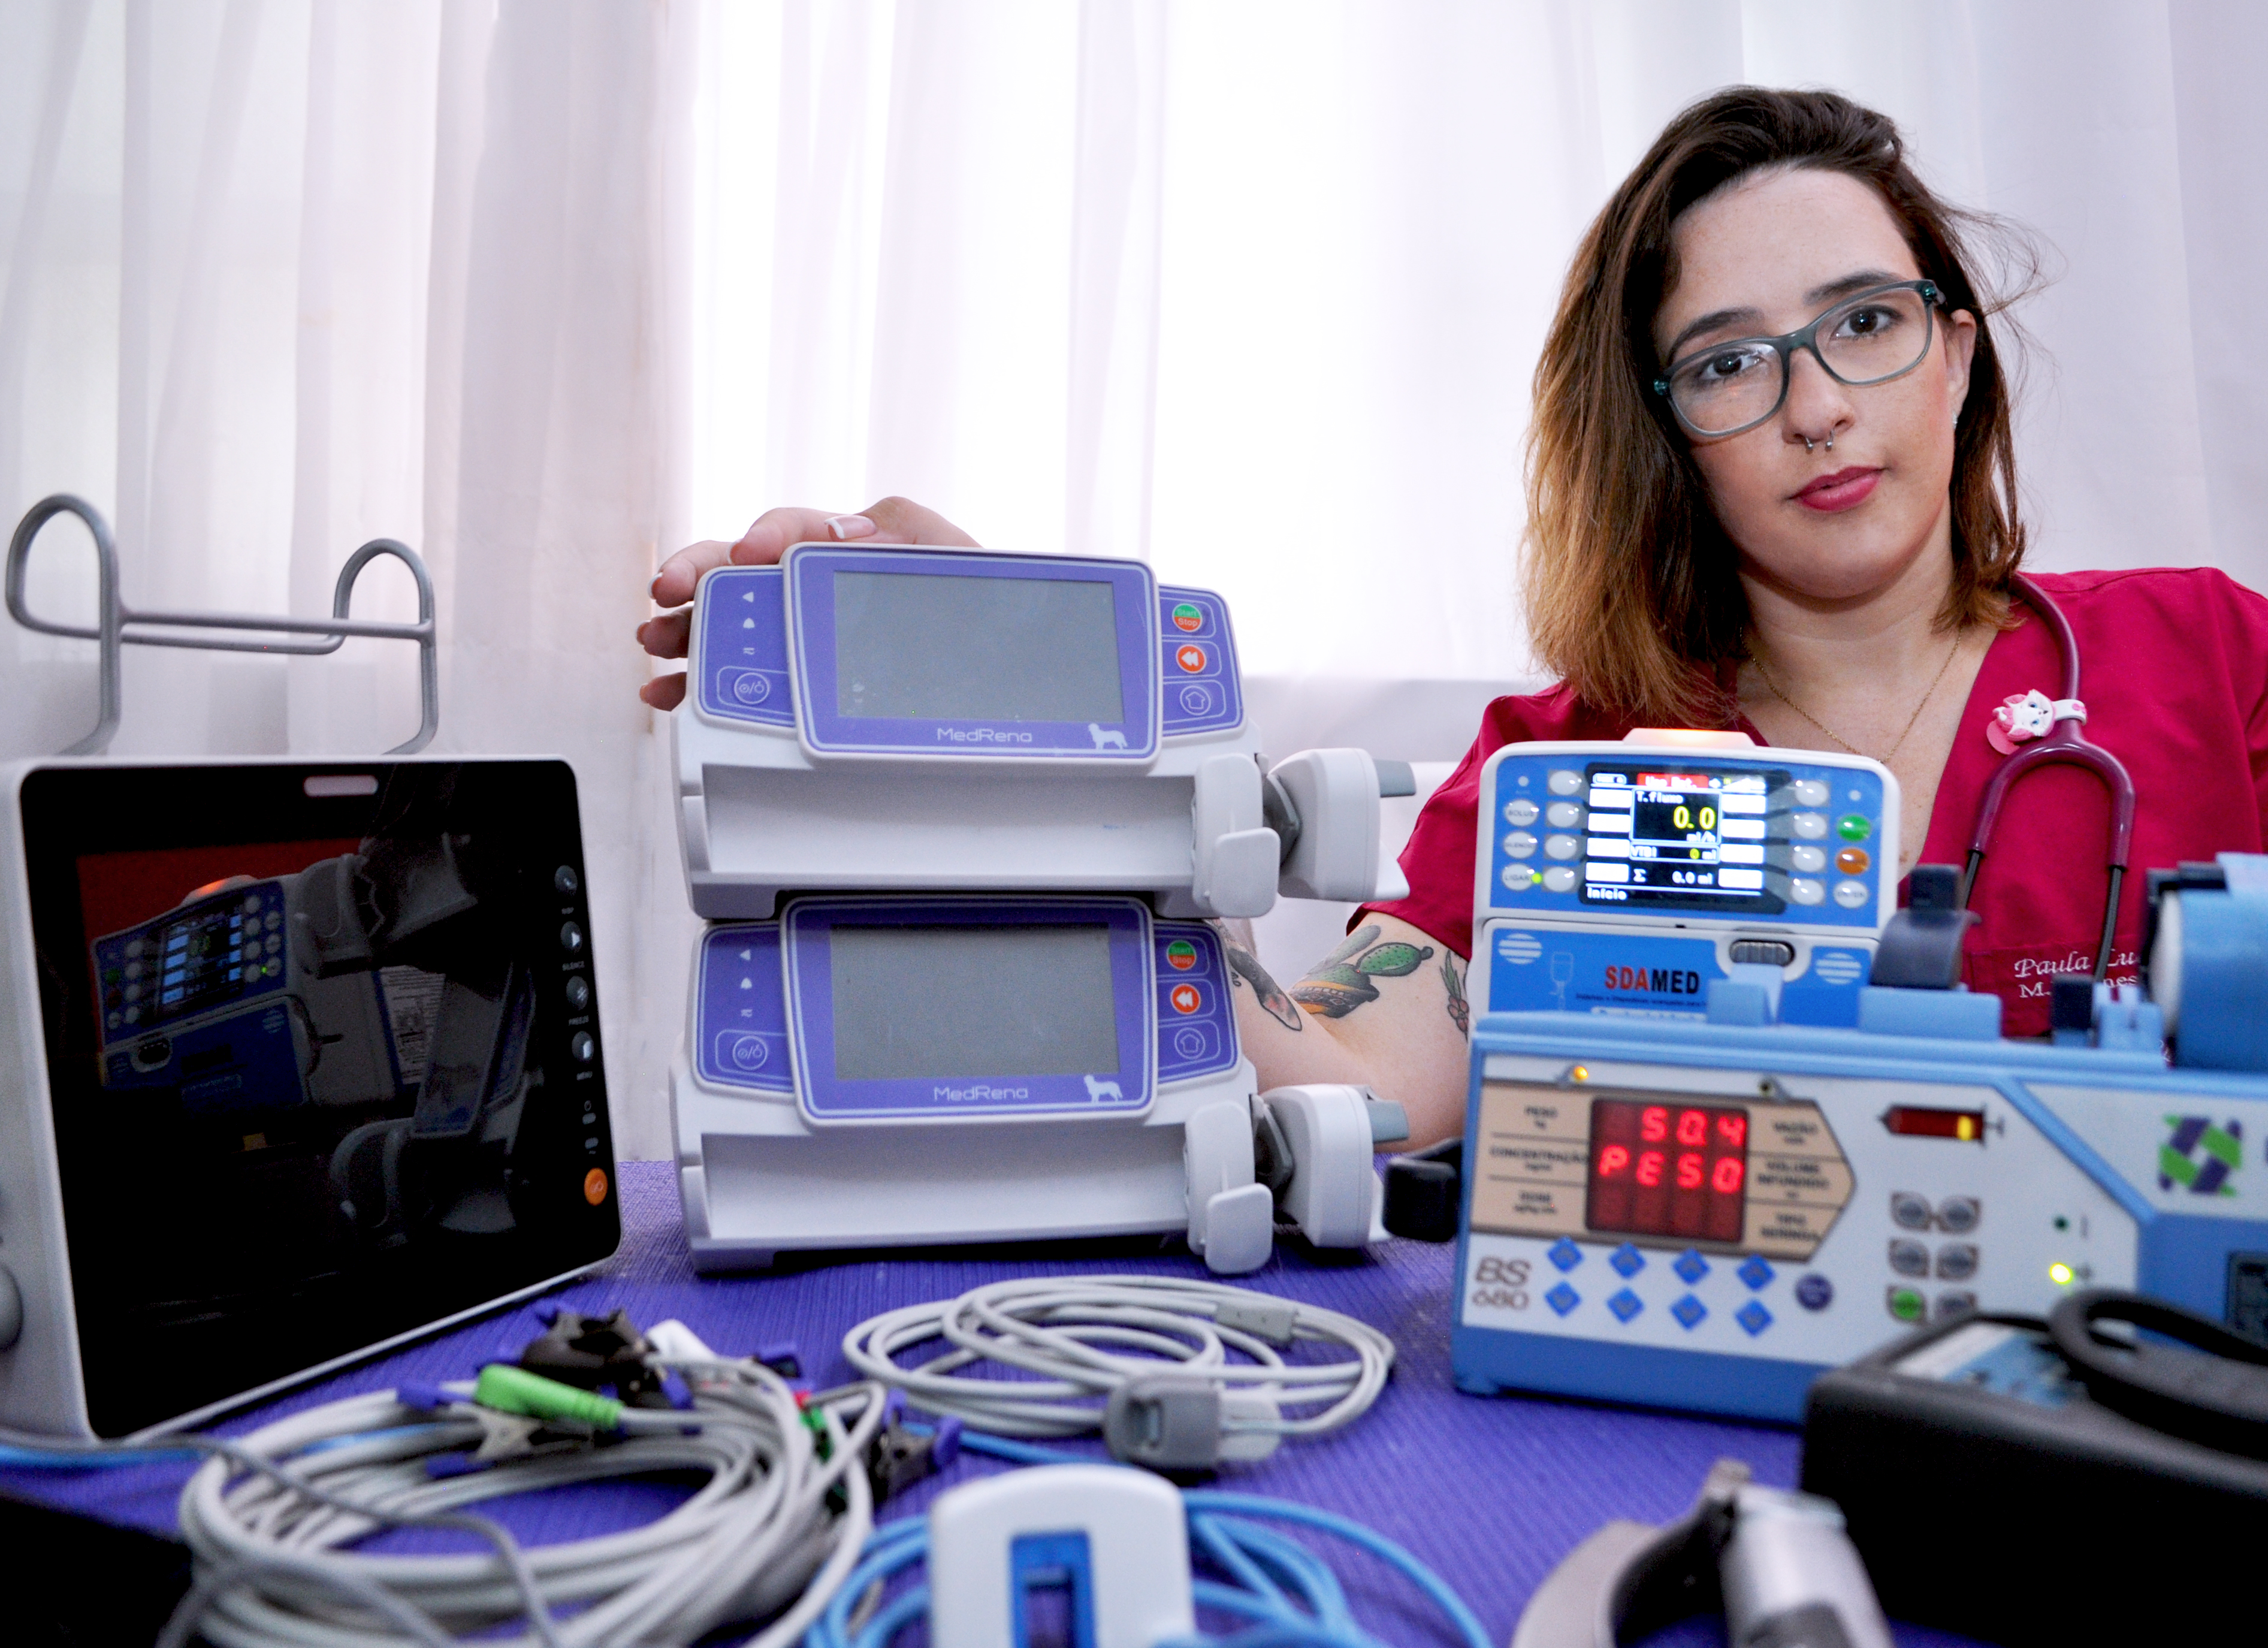 Procedimentos feitos com equipamentos de qualidade. Na imagem aparece a Médica Veterinária Paula demonstrando os equipamentos utilizados para anestesia